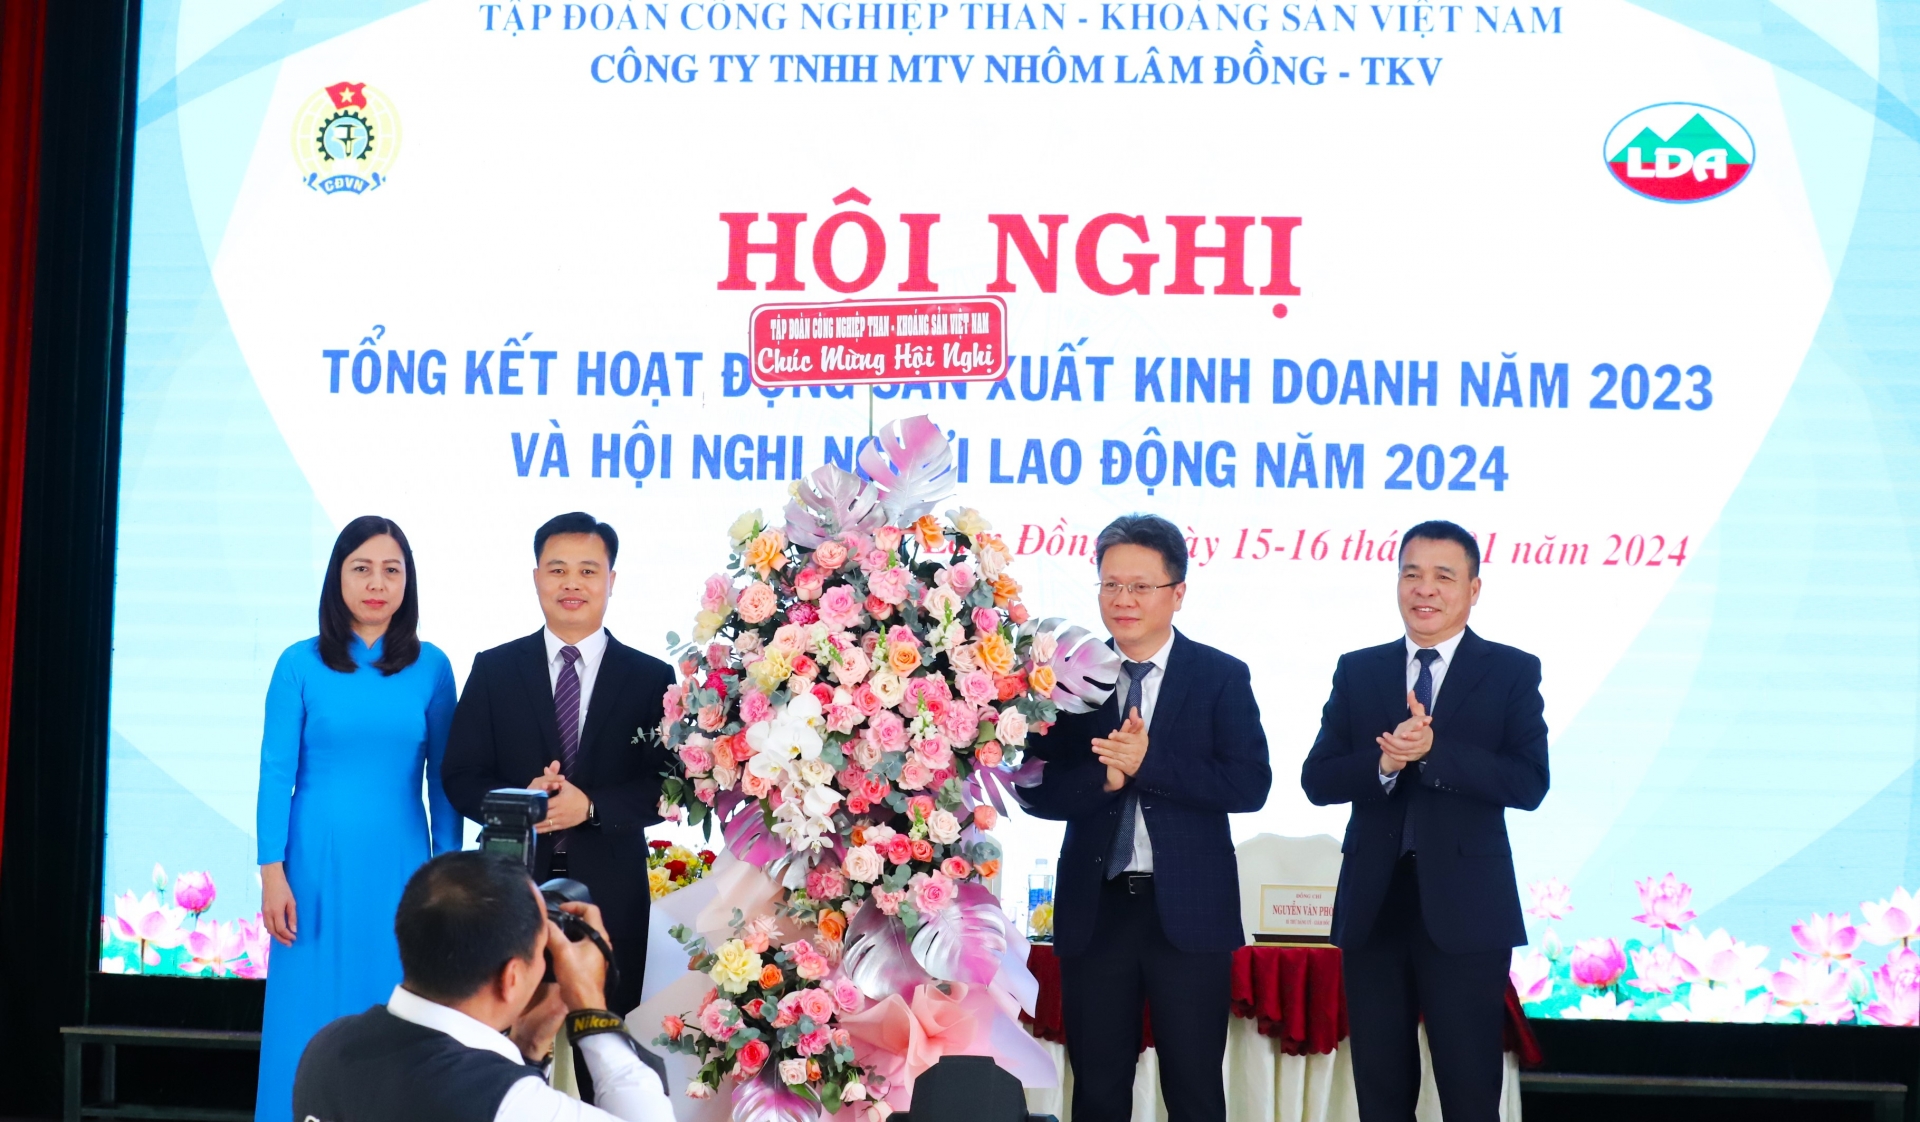 Đồng chí Nguyễn Tiến Mạnh – Phó Tổng giám đốc TKV tặng hoa chúc mừng hội nghị 